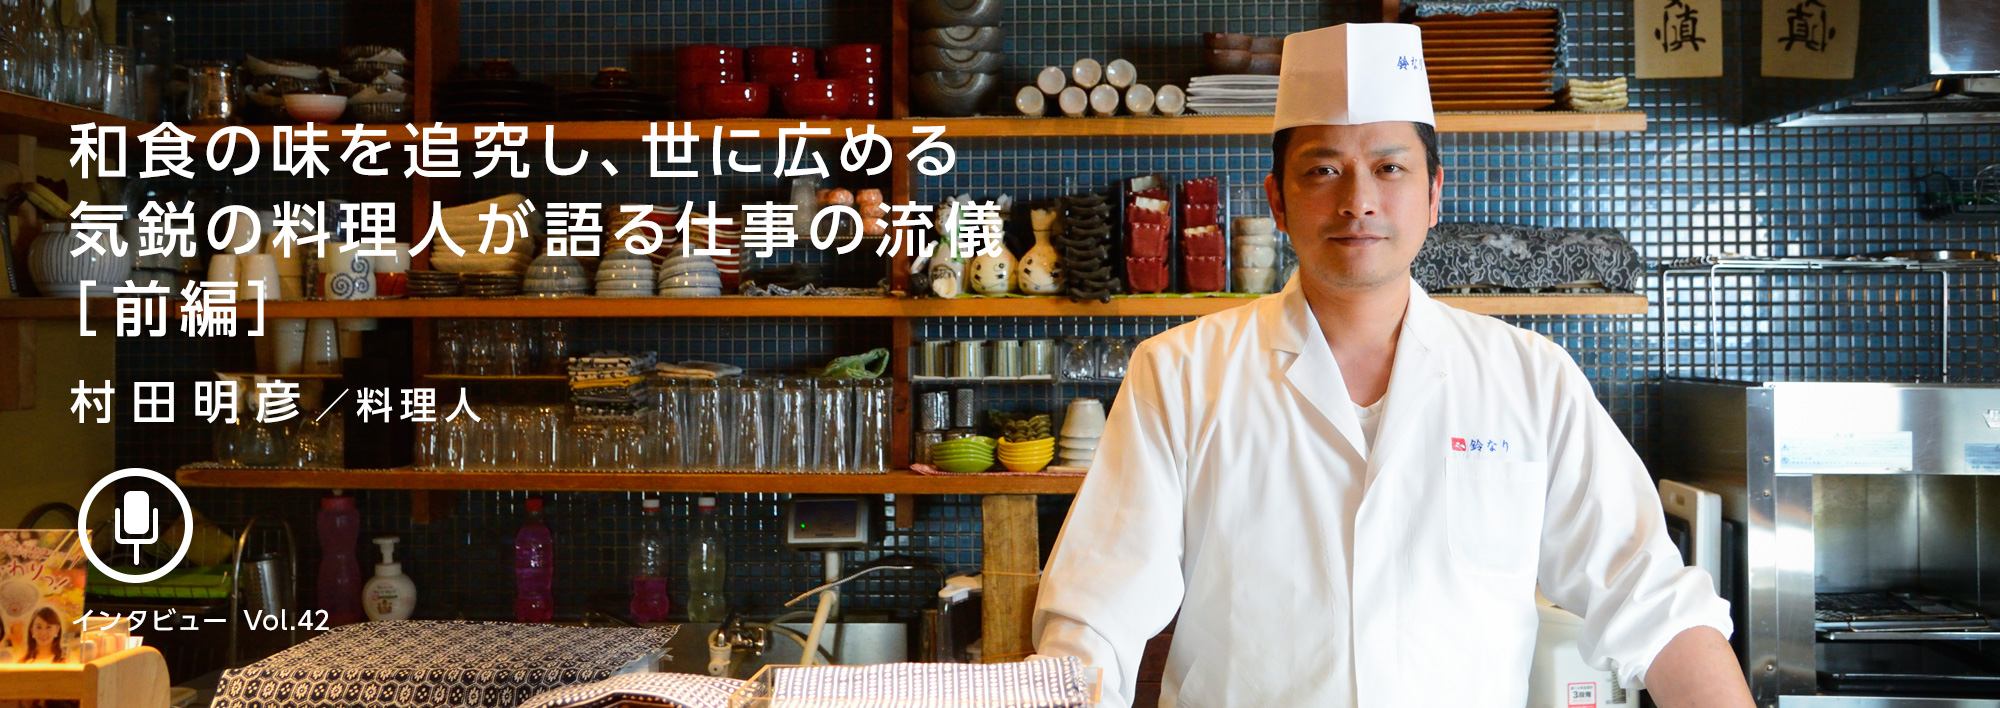 村田明彦 料理人 和食の味を追究し 世に広める気鋭の料理人が語る仕事の流儀 前編 Wave